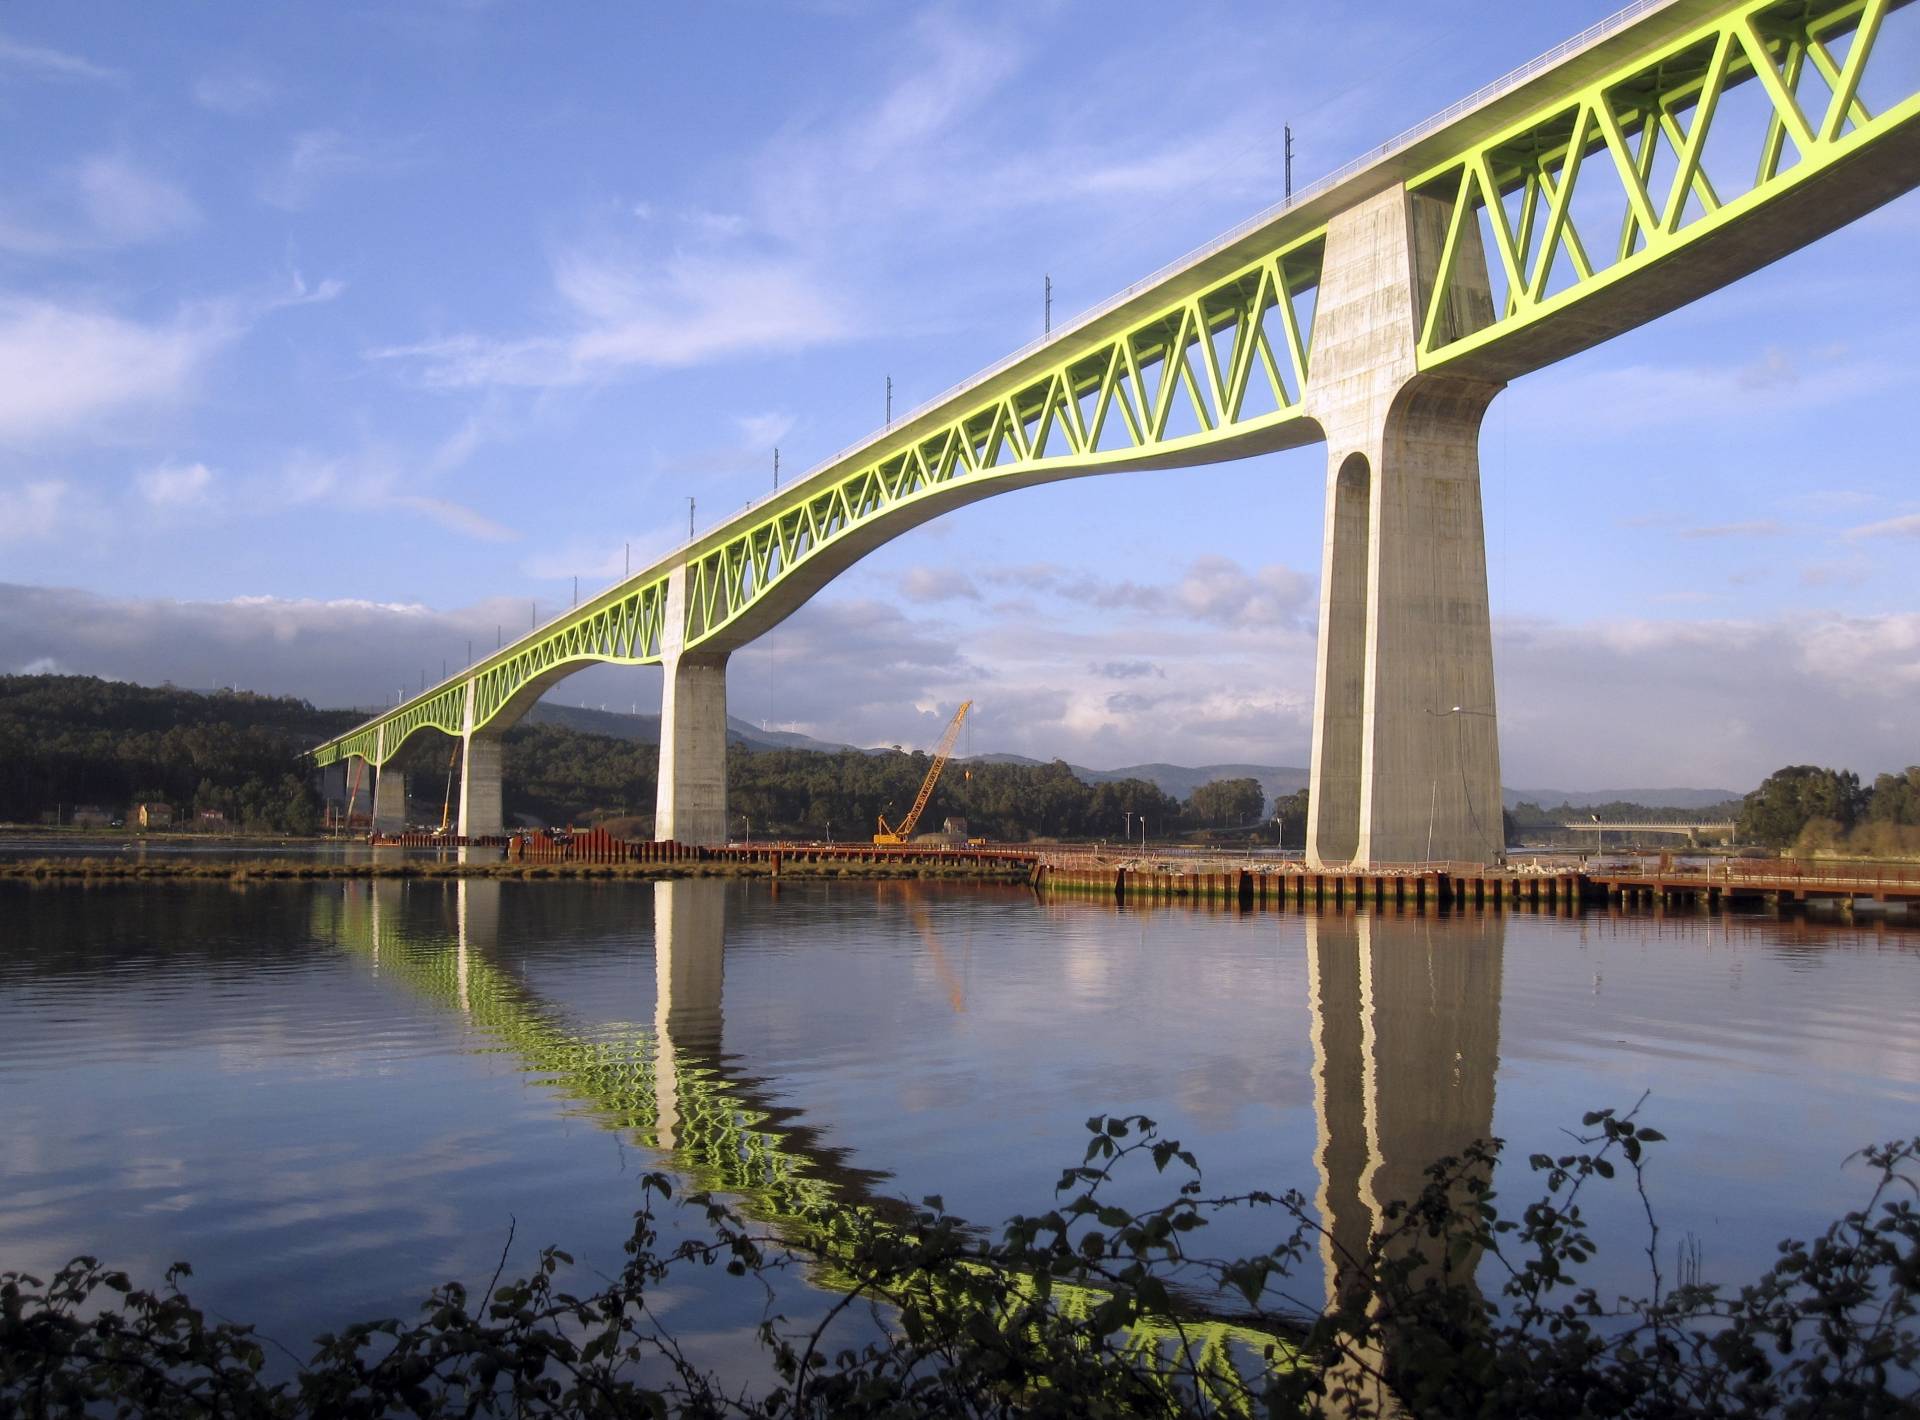 Viaducto sobre el río Ulla, un puente que ha sido premiado a nivel internacional.